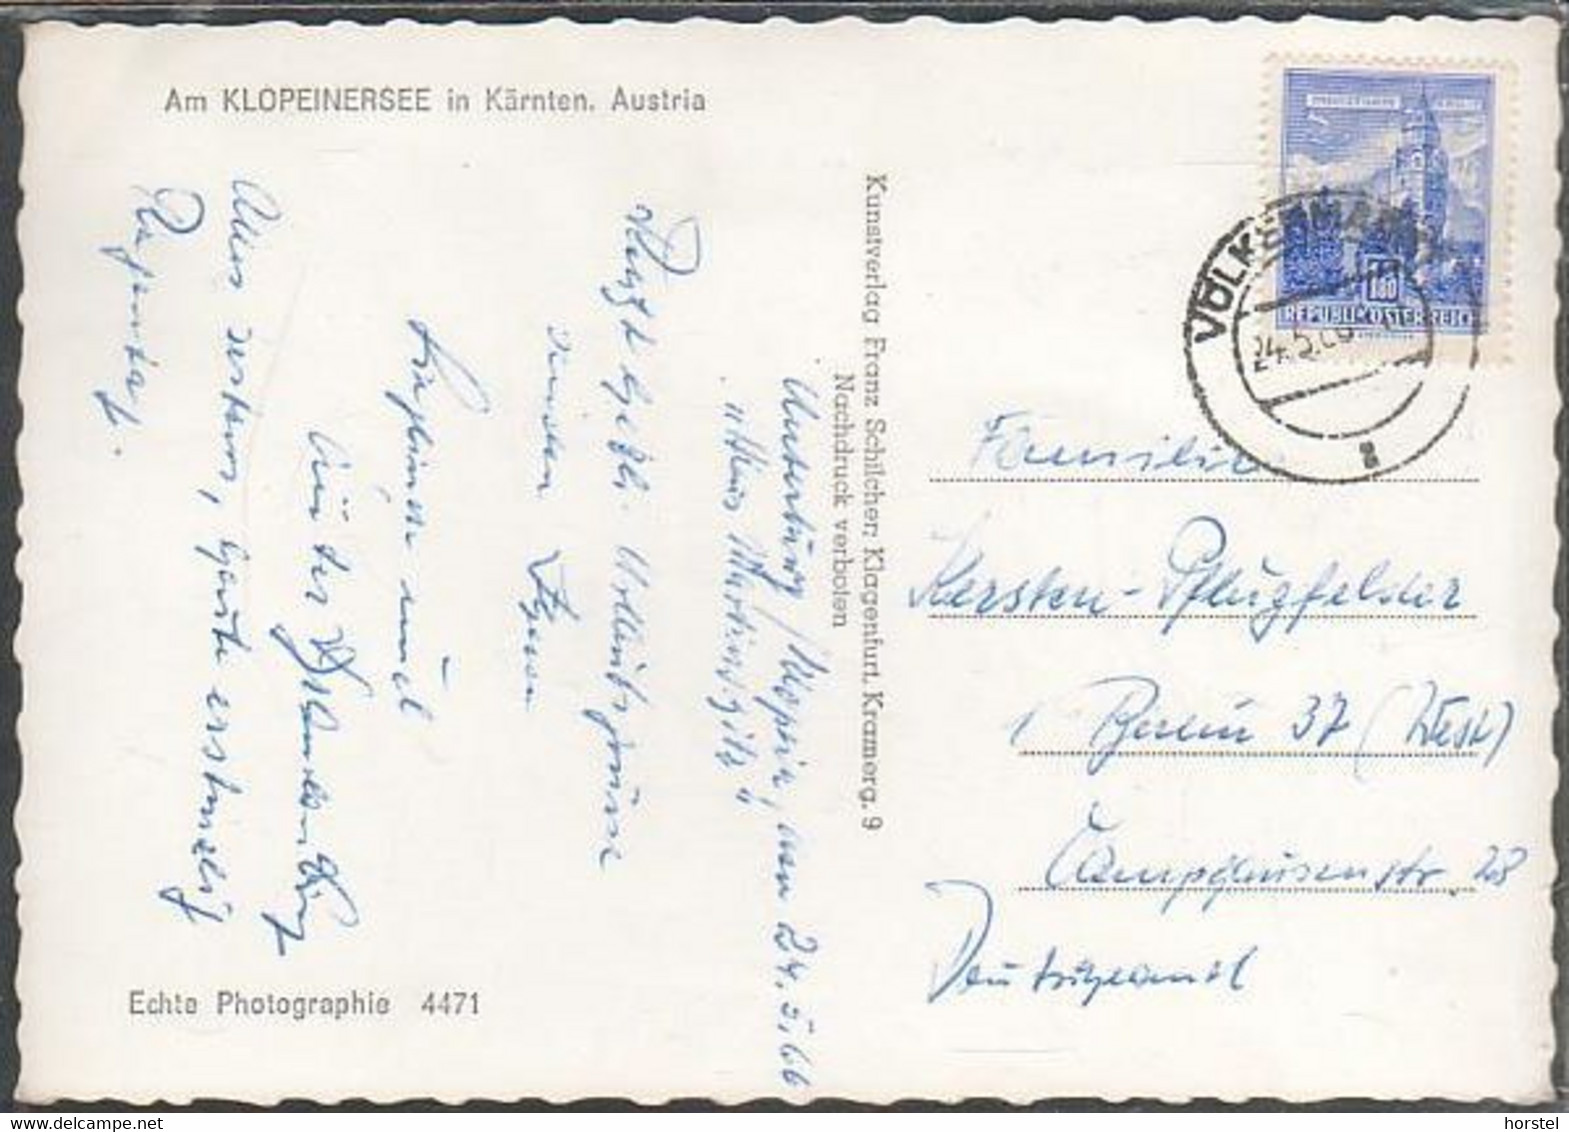 Austria - 9122 St. Kanzian - Am Klopeiner See - Hotel - Nice Stamp 1966 - Klopeinersee-Orte